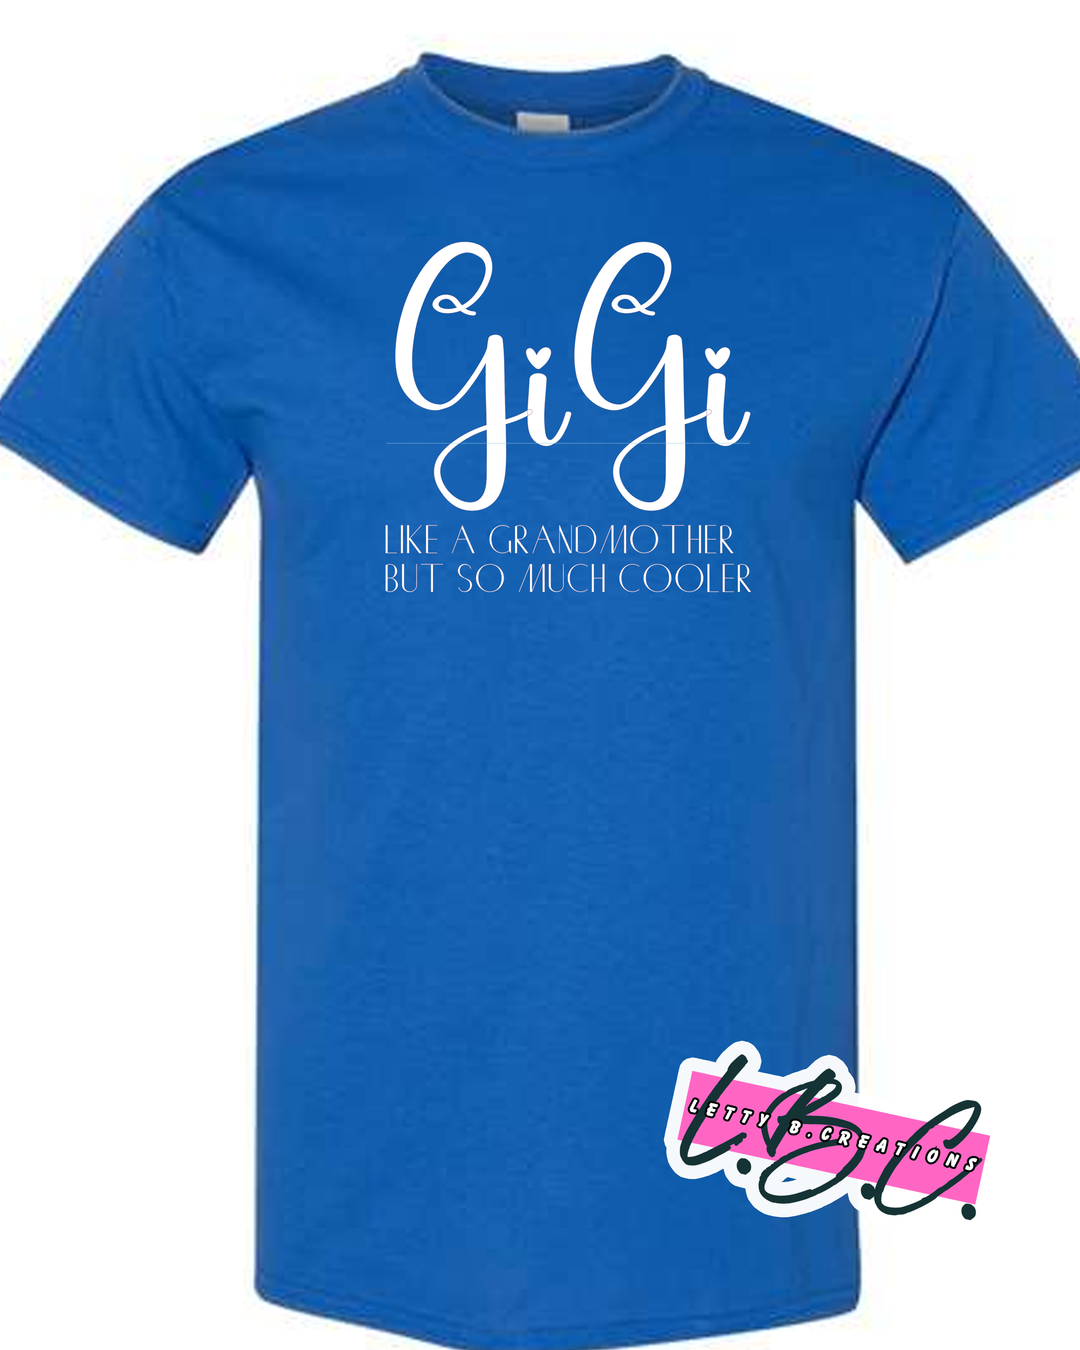 Gigi short sleeve t-shirt